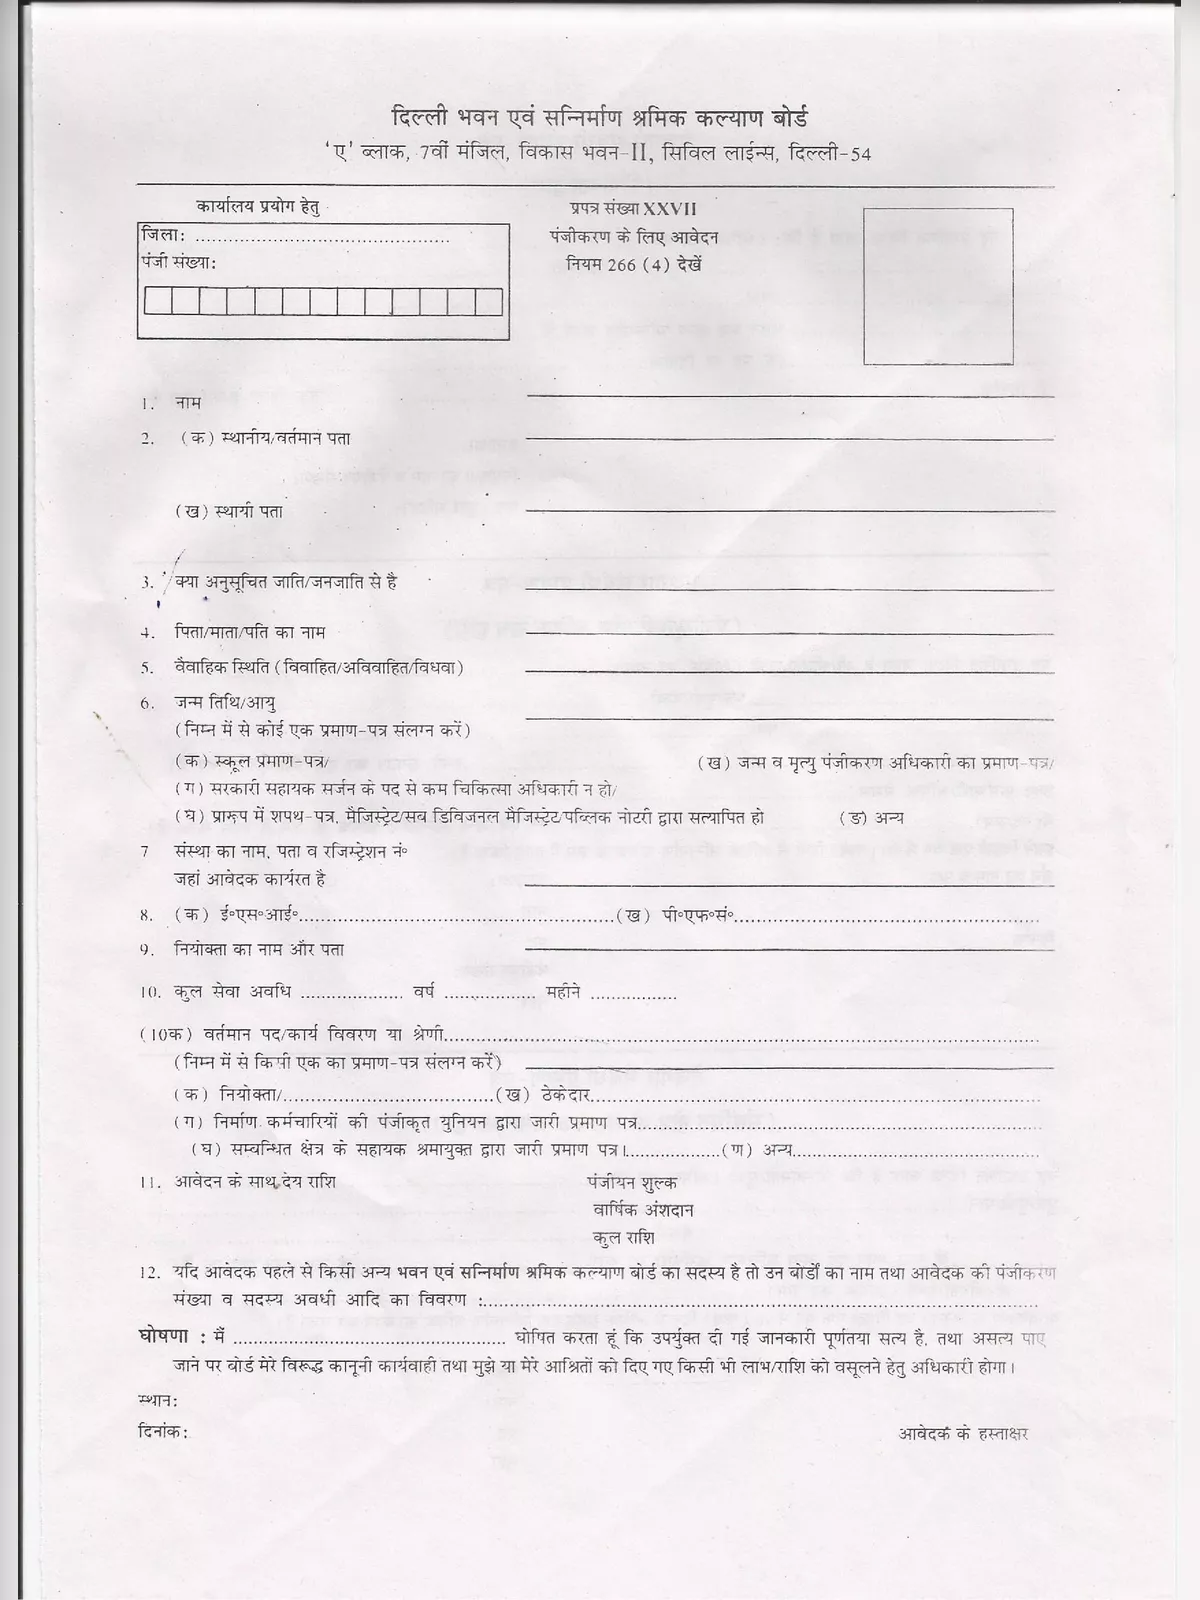 Labour Construction Worker Form Delhi